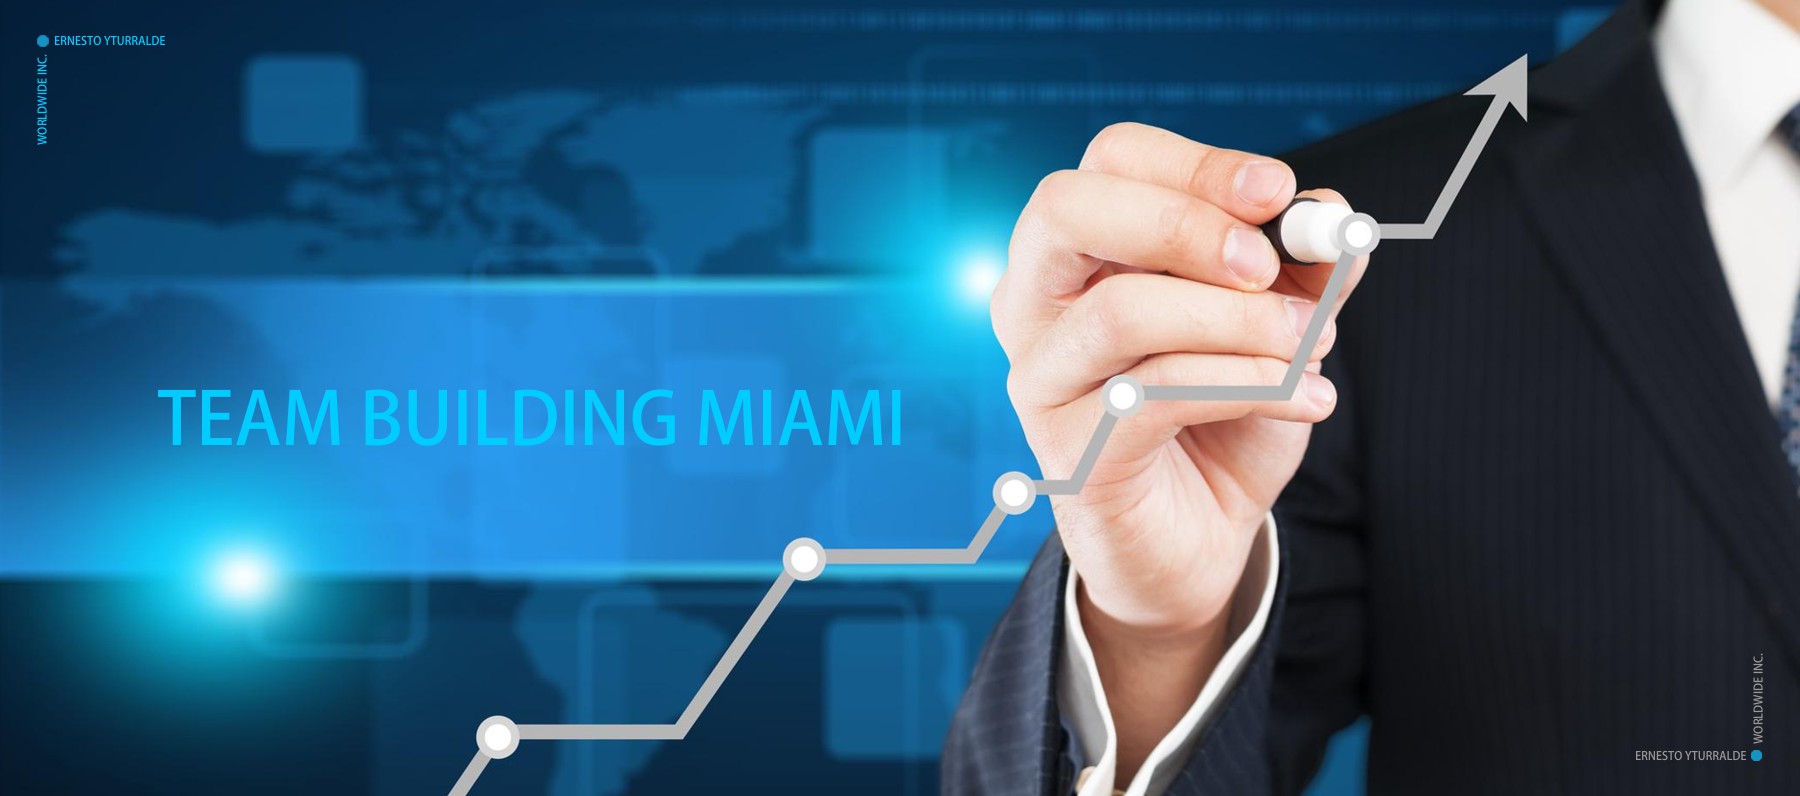 Team Building Miami - Beneficios del Team Building